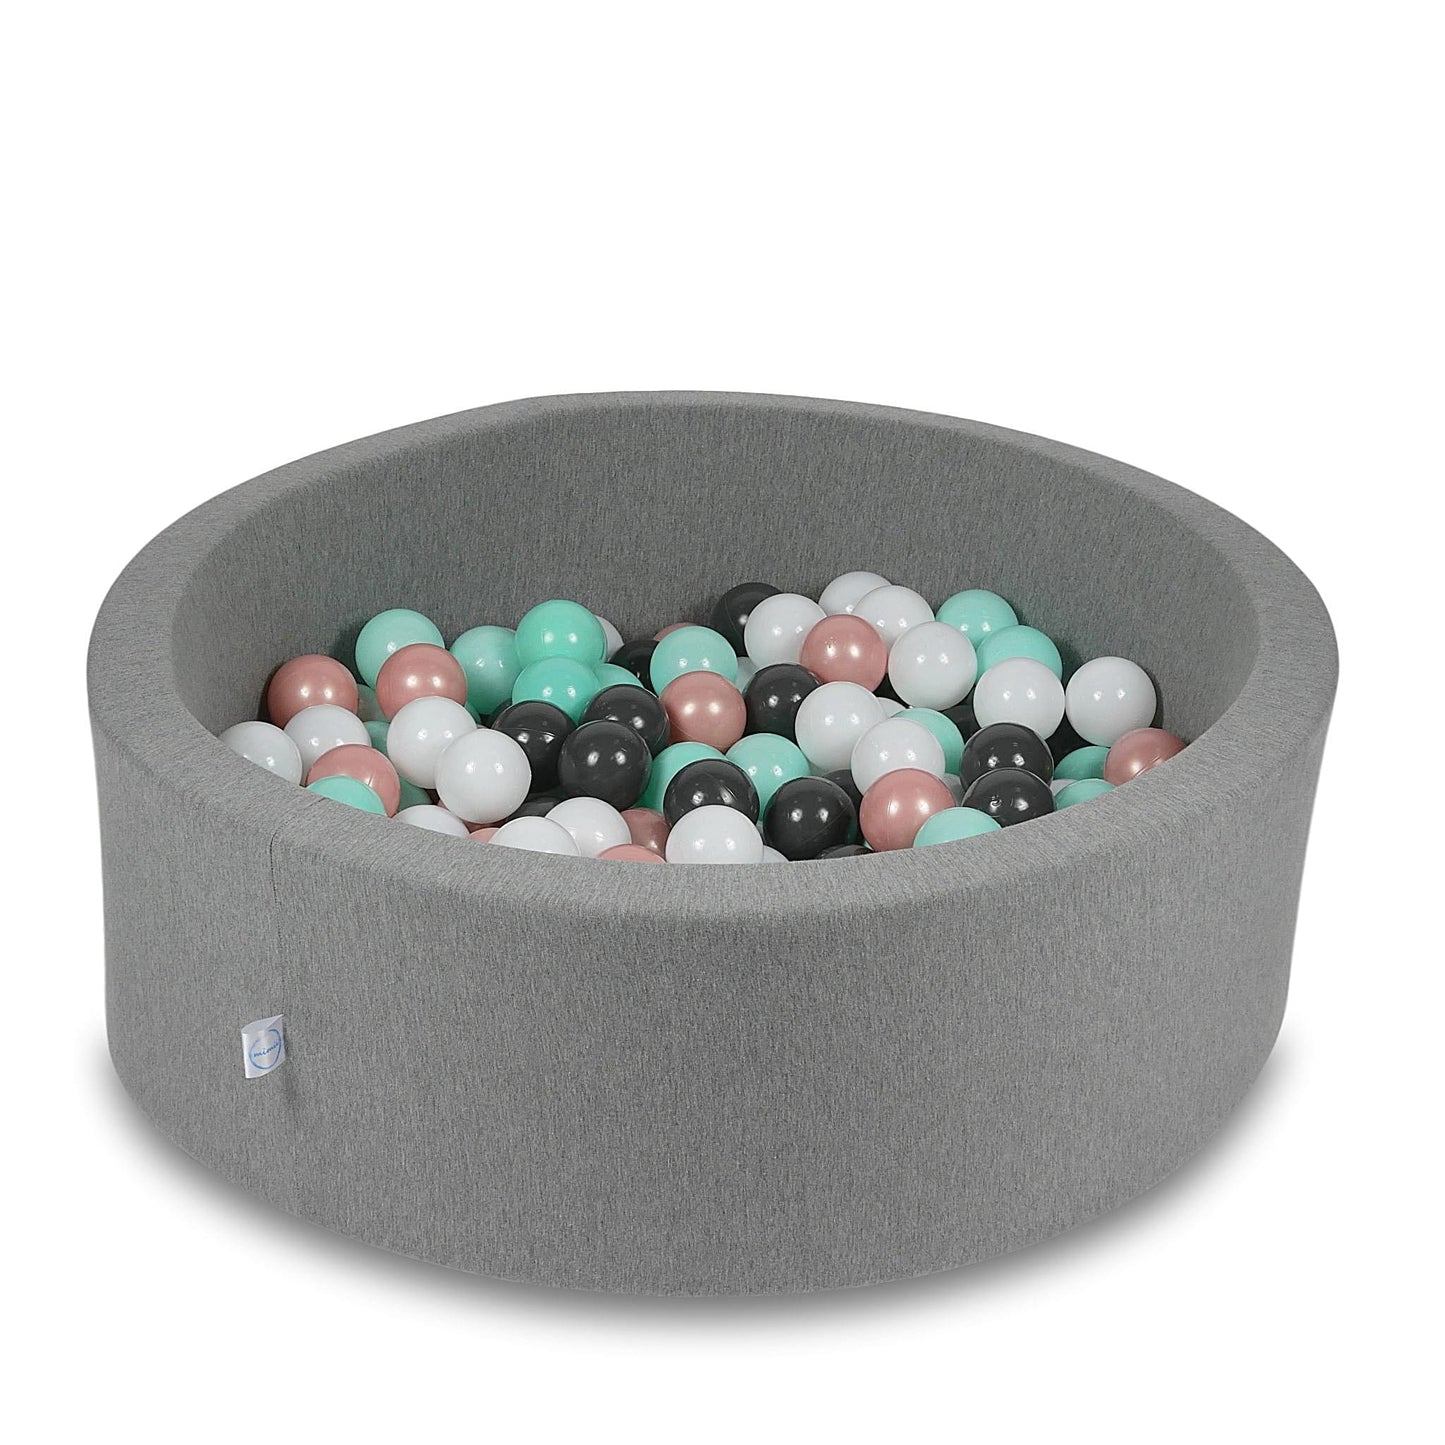 Piscine à Balles 90x30cm grise avec balles 200pcs (blanc, rose, menthe claire, graphite)